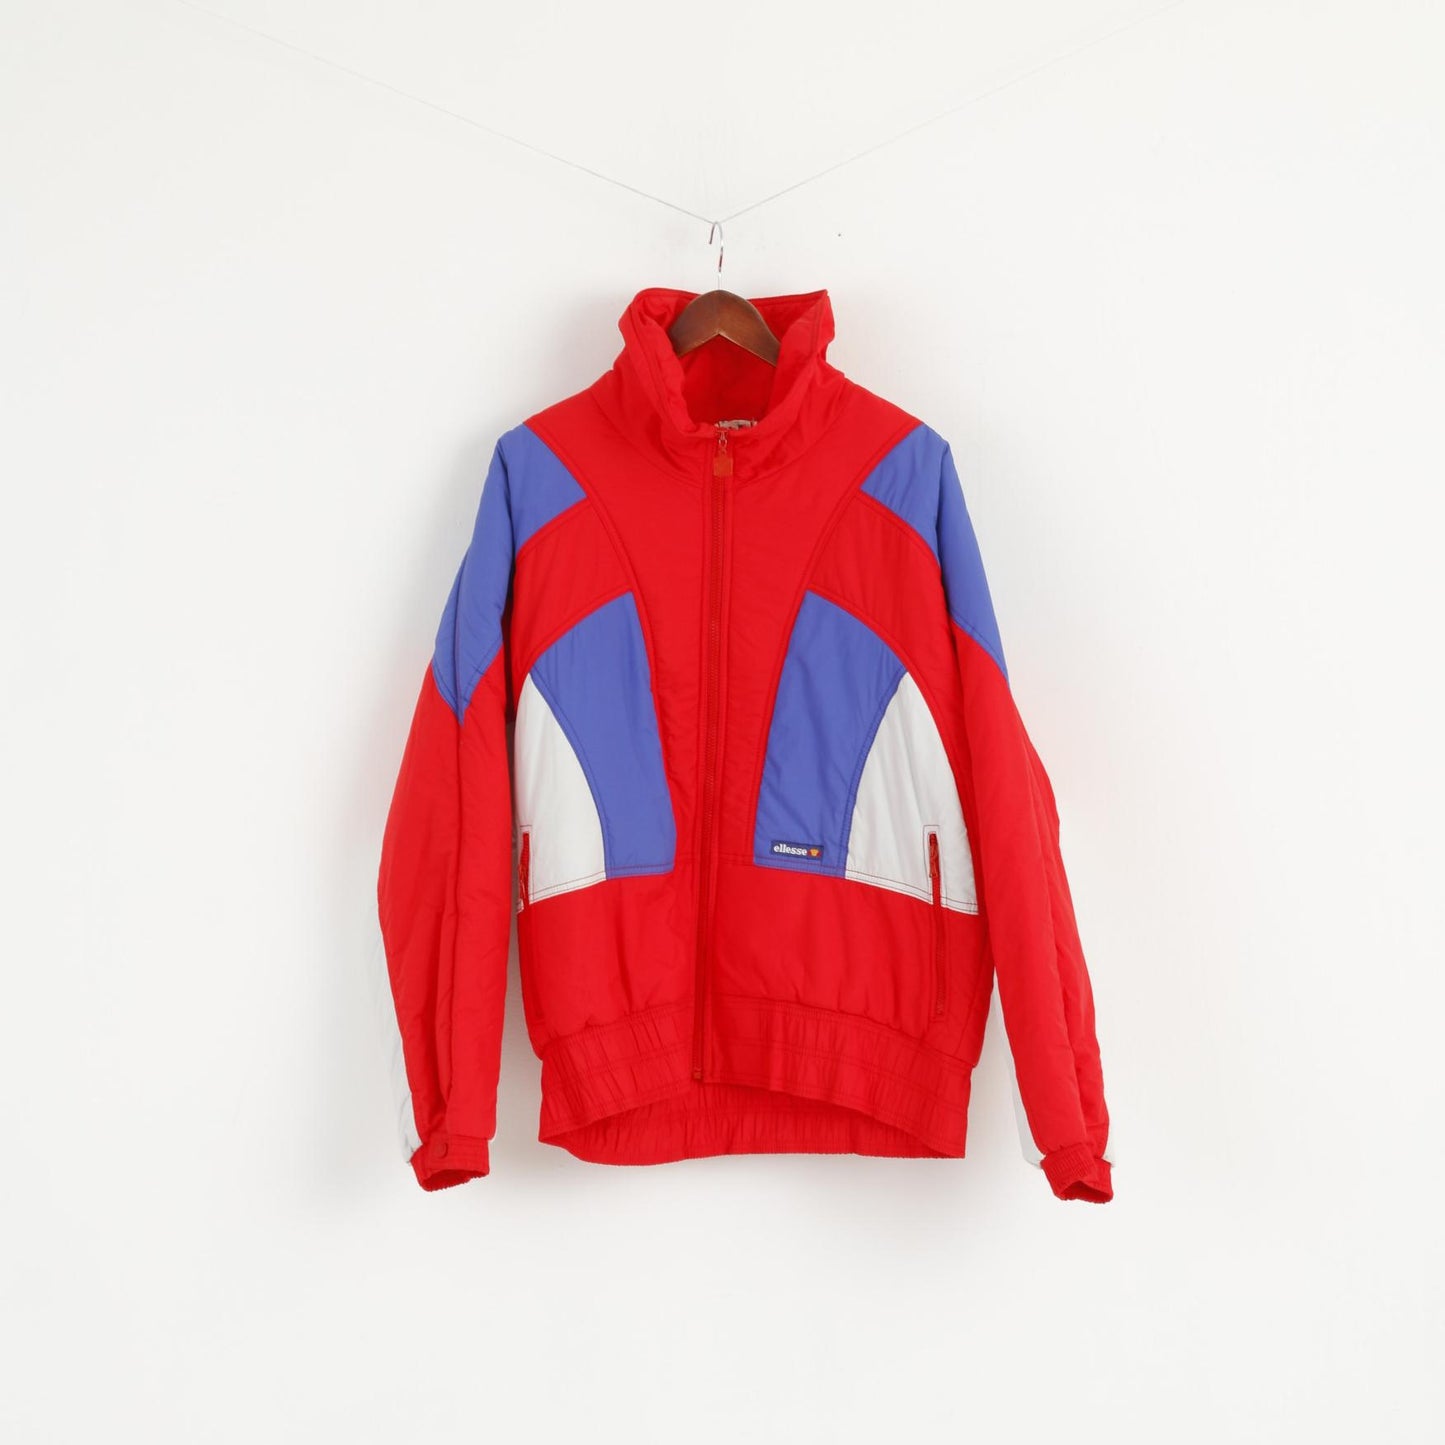 MICRO By Ellesse Men 54 L Jacket Ski Red Nylon Waterproof Italy Vintage 80s